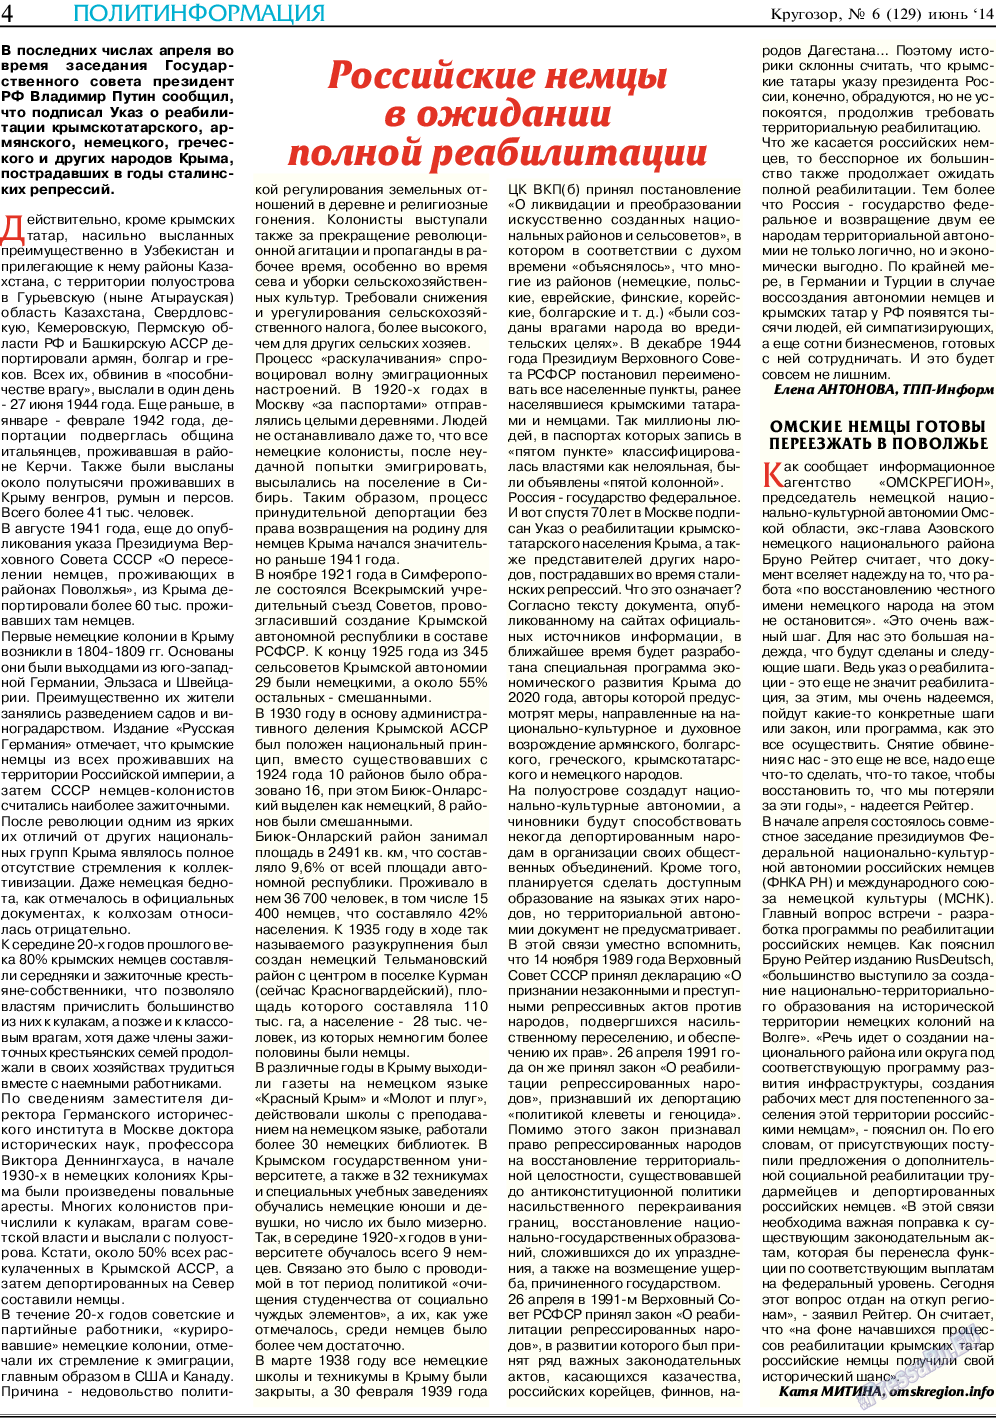 Кругозор, газета. 2014 №6 стр.4